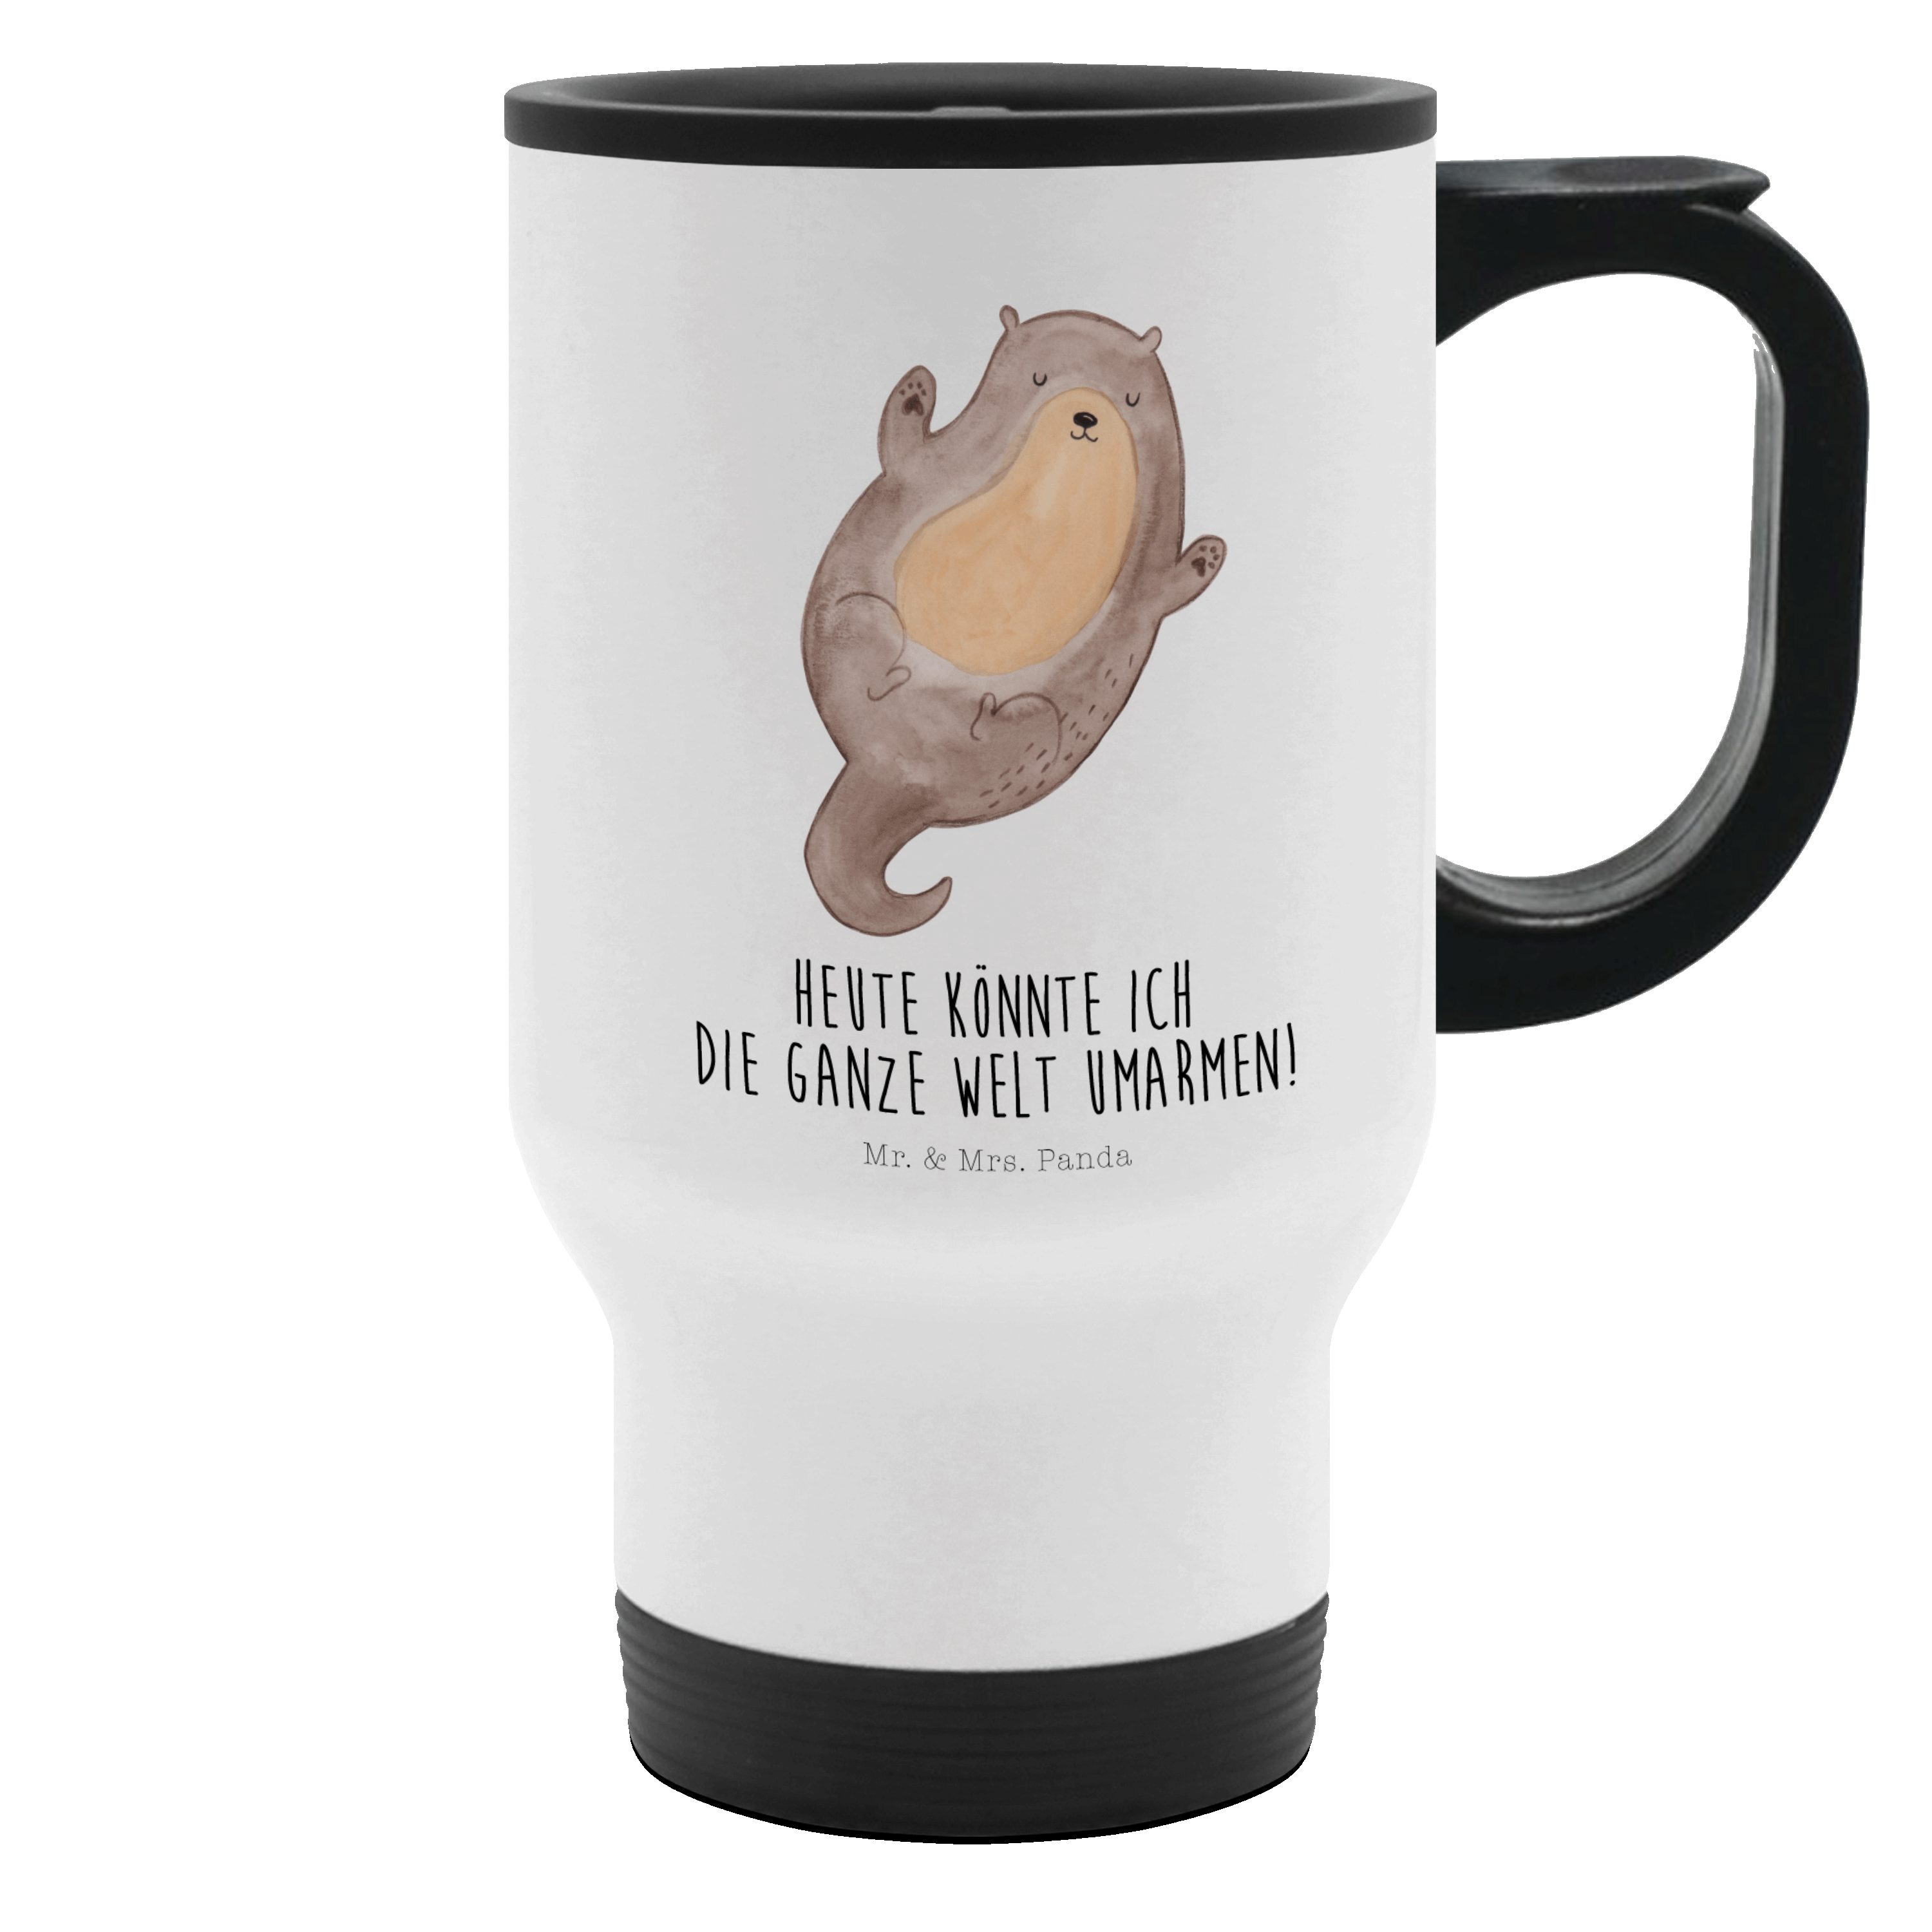 Mr. & Mrs. Panda Thermobecher Otter Umarmen - Weiß - Geschenk, Tasse zum Mitnehmen, Kaffeebecher, o, Edelstahl, Einzigartige Motive